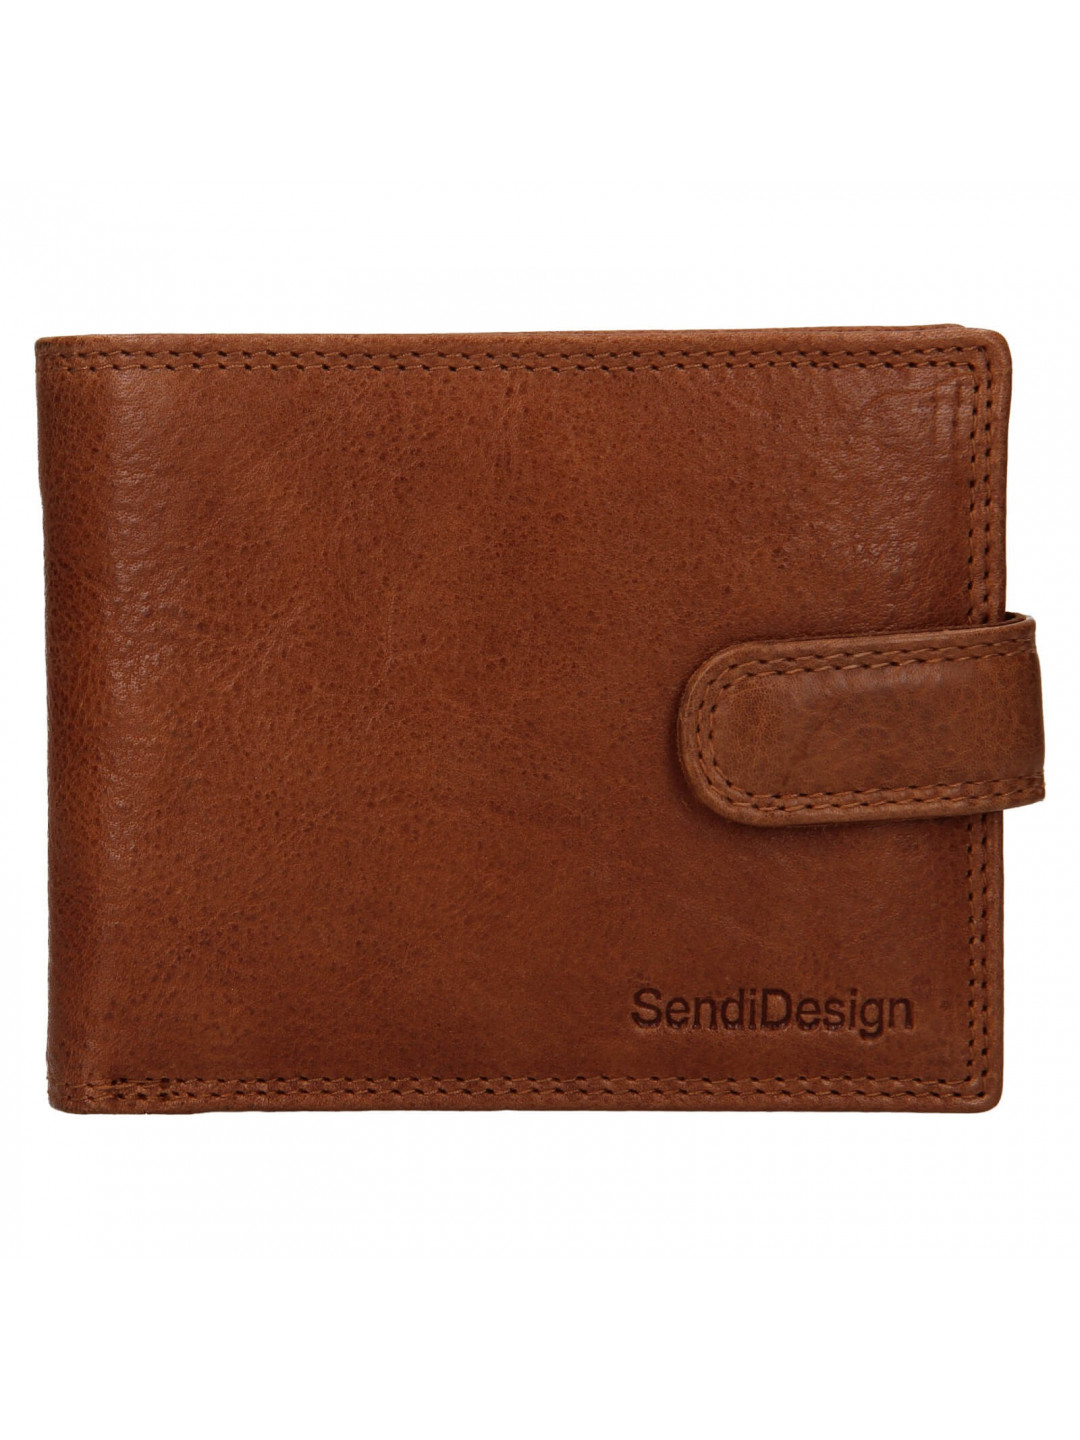 Pánská kožená peněženka SendiDesign Dowsn – koňak